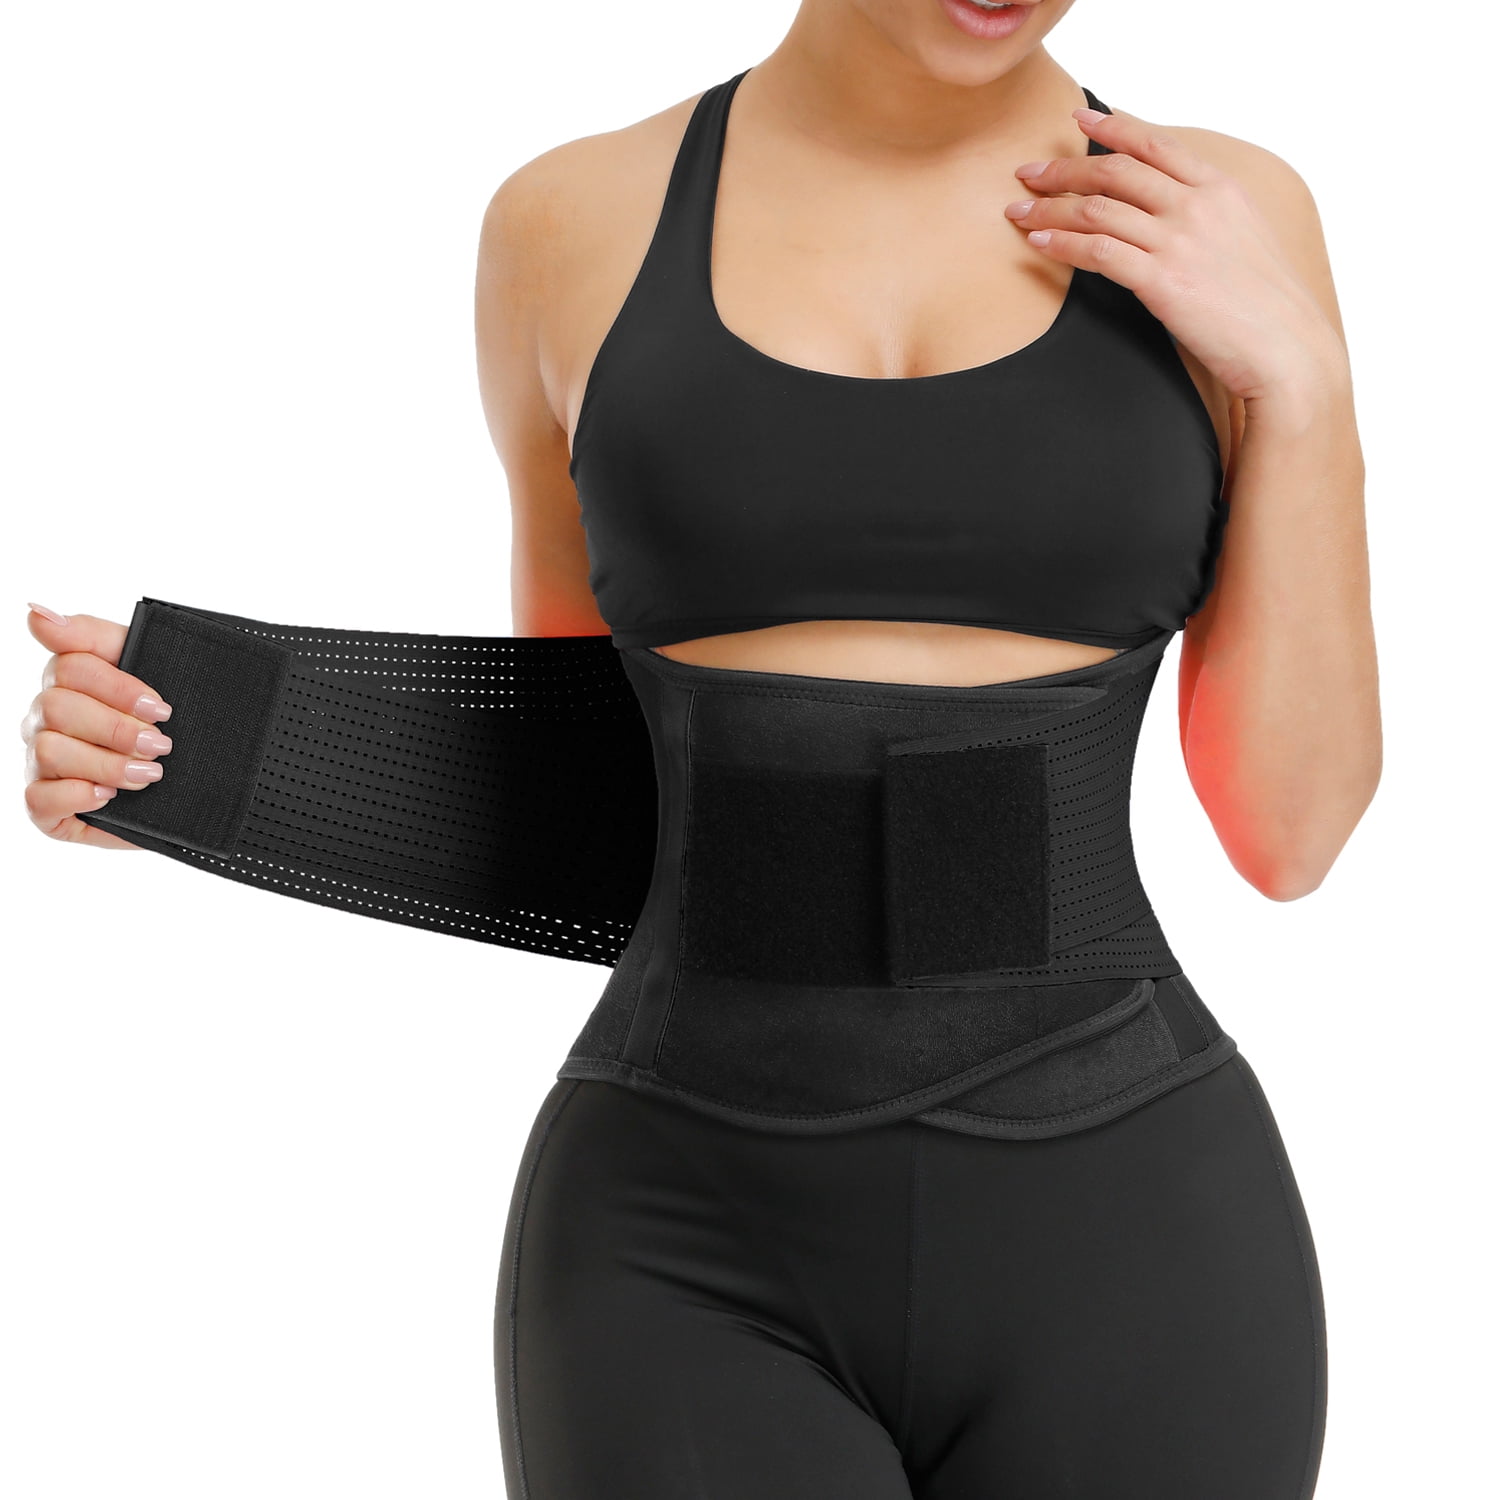 Women's Waist Trainer Cincher Sport Girdle Slimming Tummy Wrap Belt Black